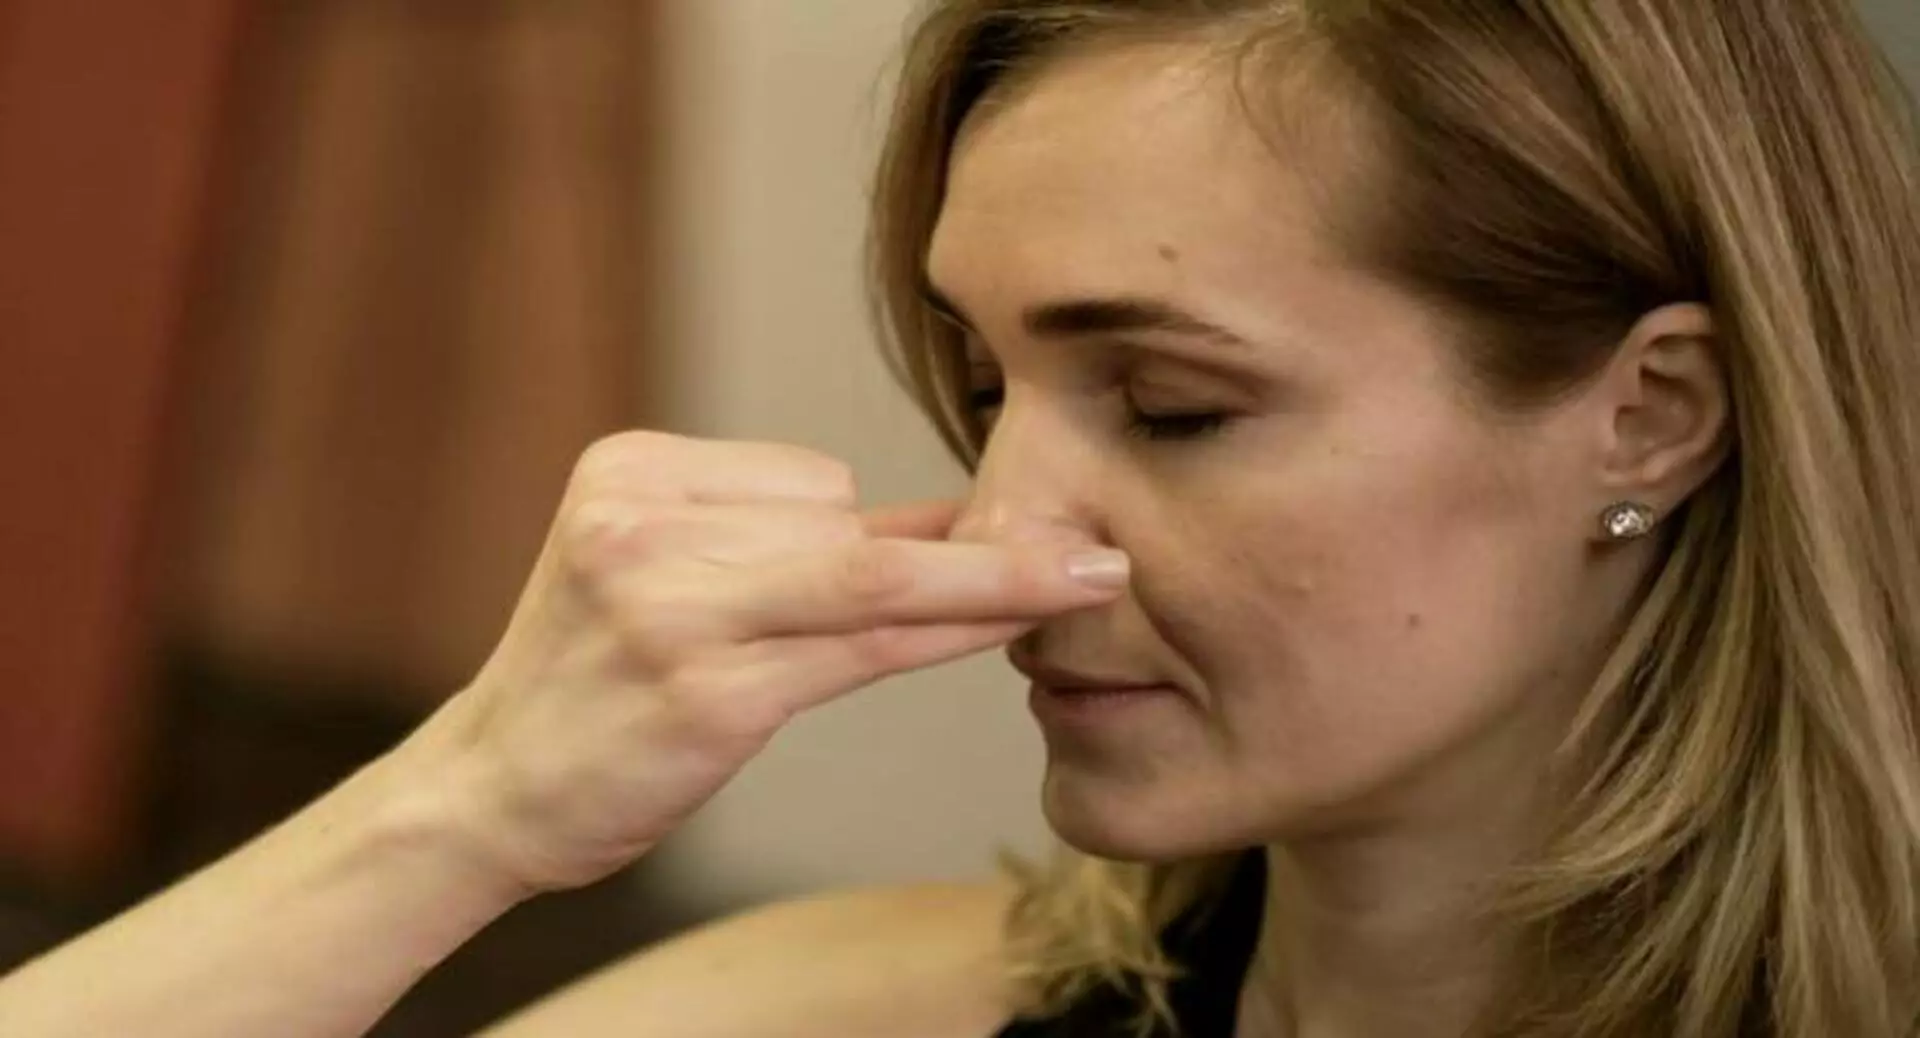 Макияж, массаж, упражнения: как скорректировать форму носа без хирургии